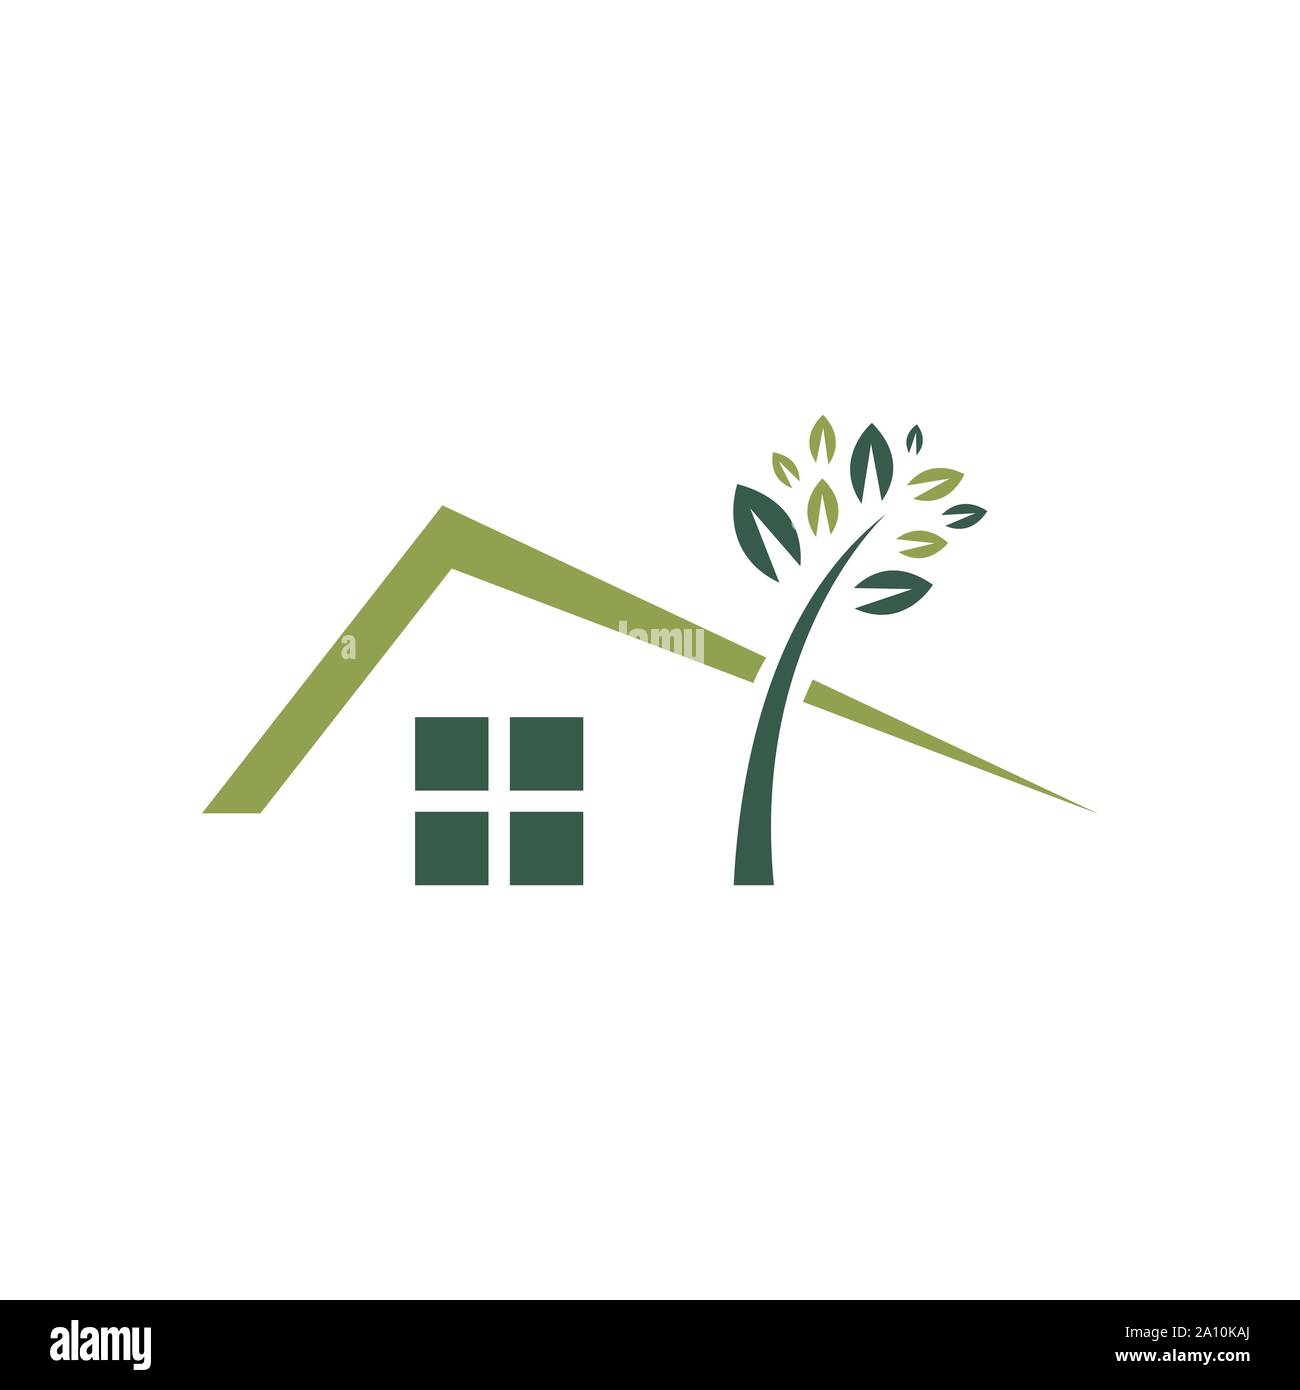 Pflanzen green house Logo Design Vektor icon Abbildung Stock Vektor